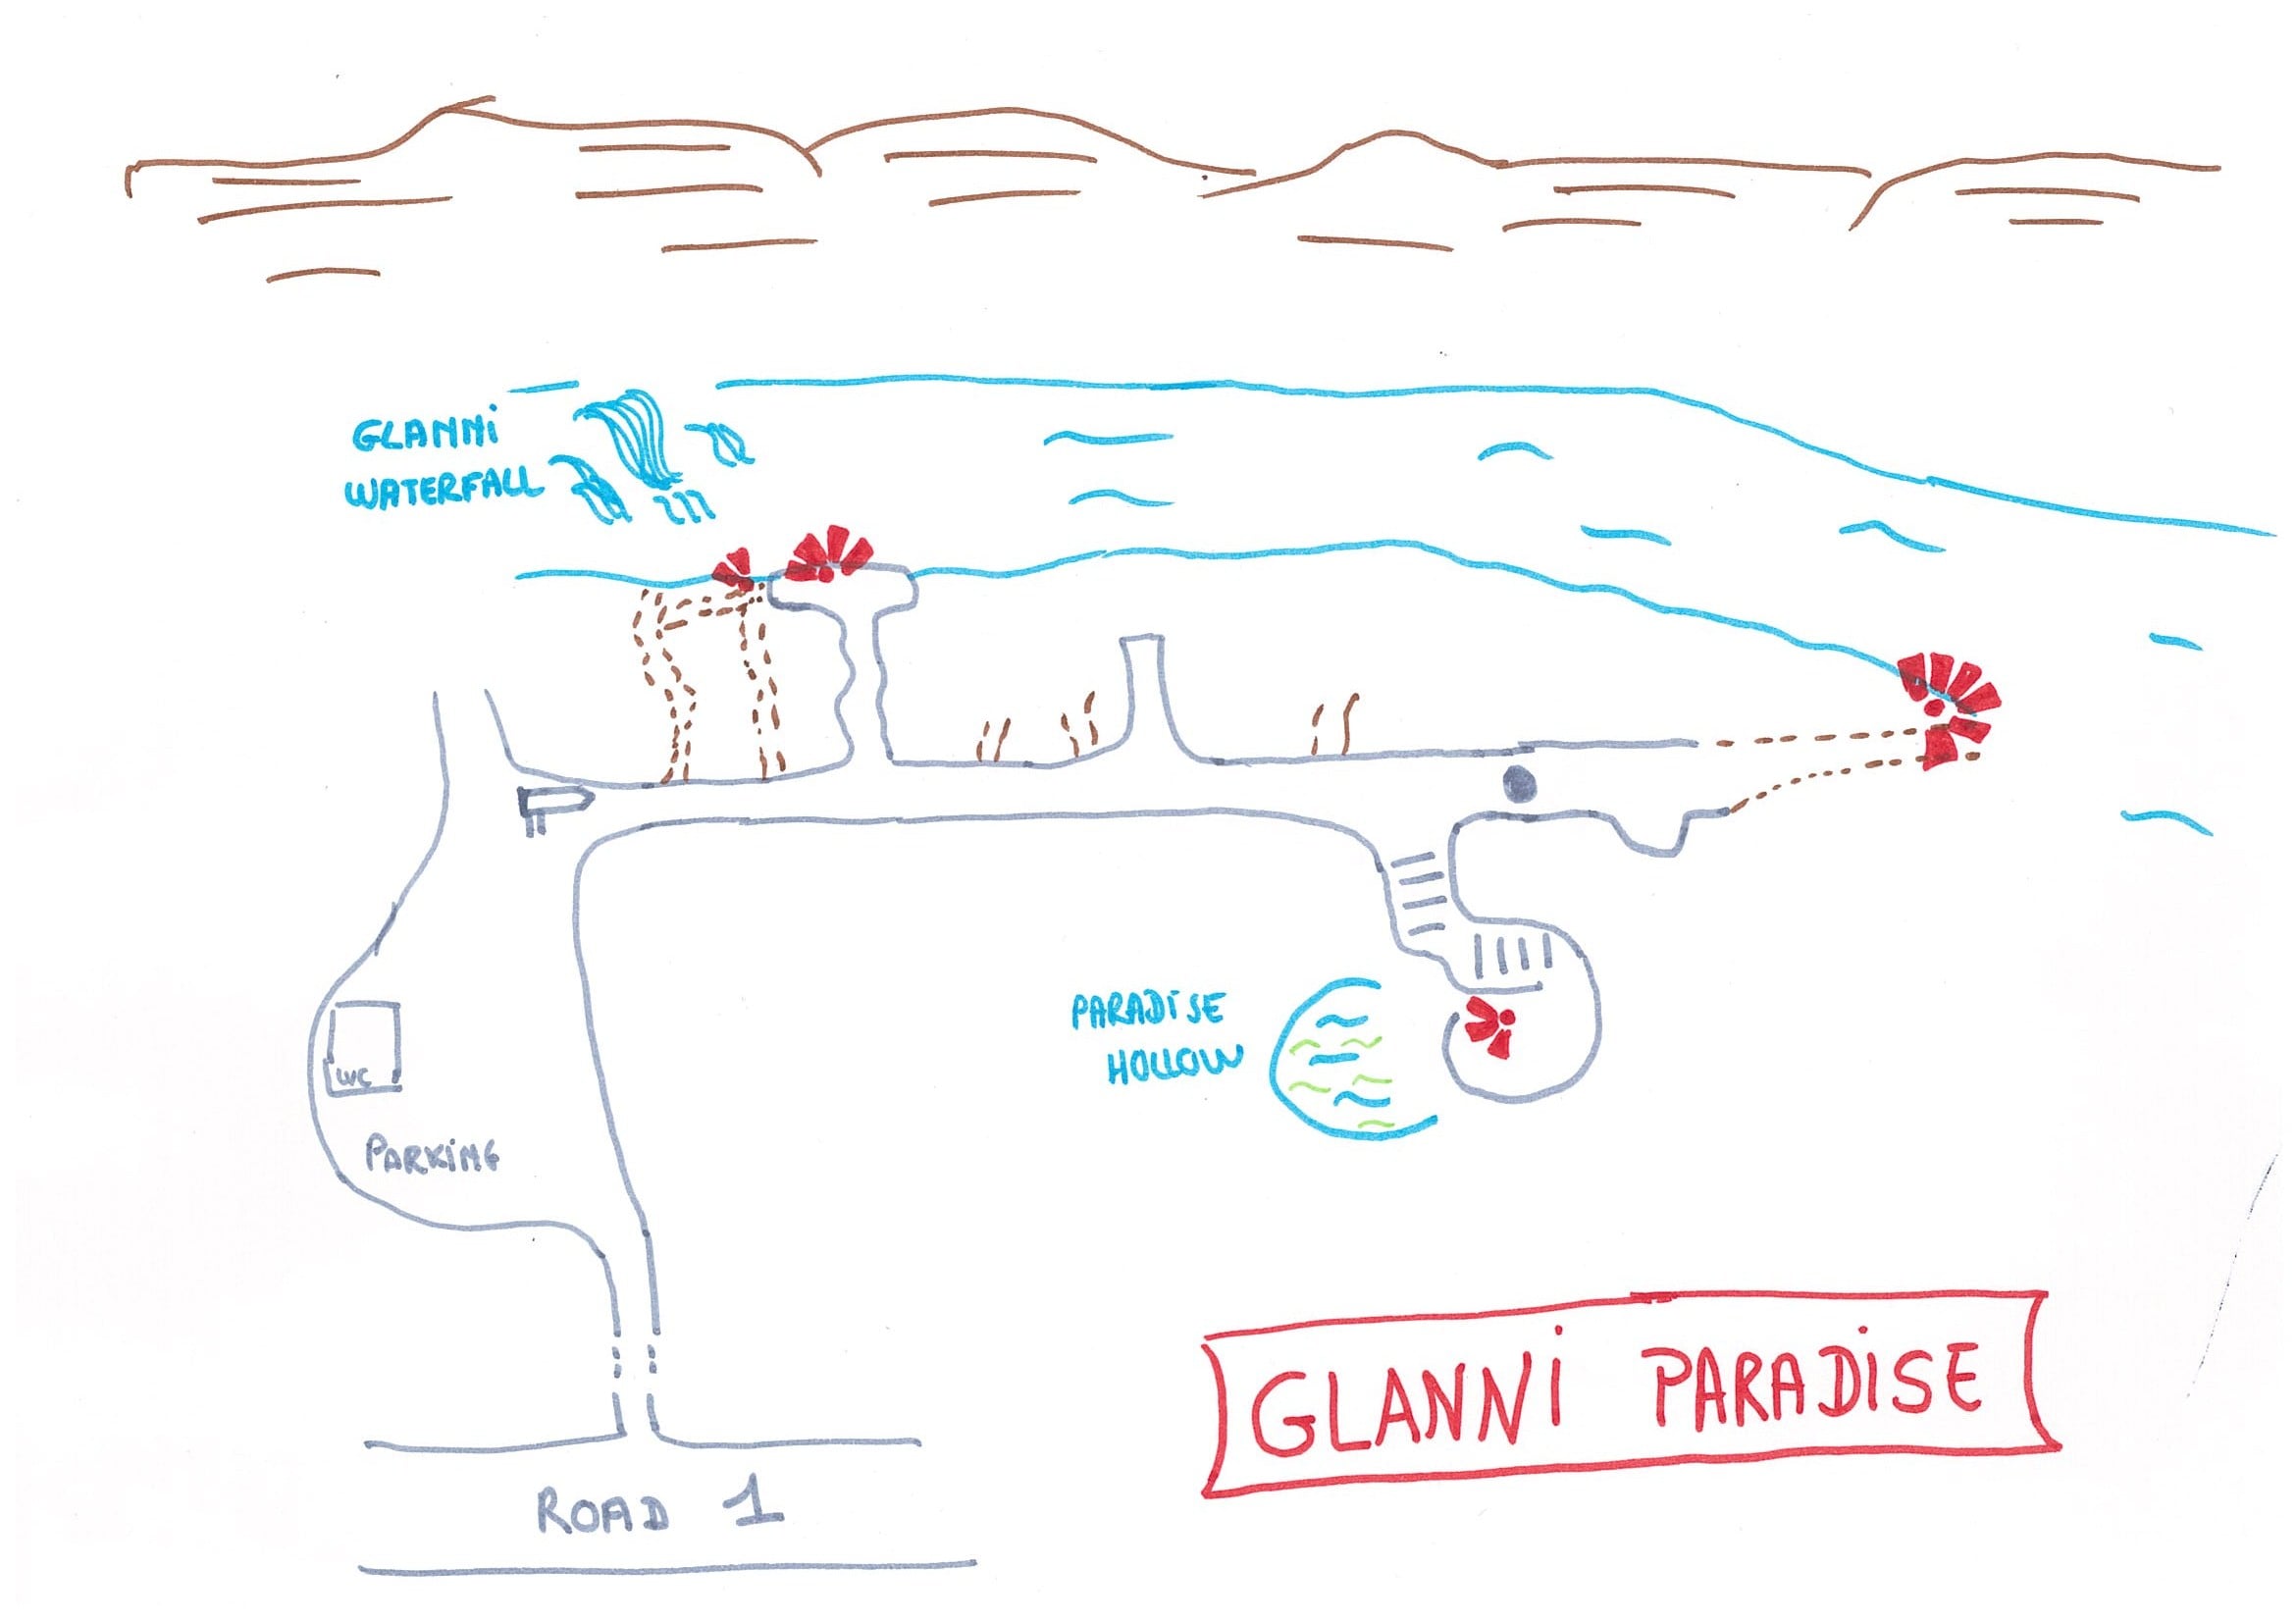 Map - Glanni Paradise, Iceland